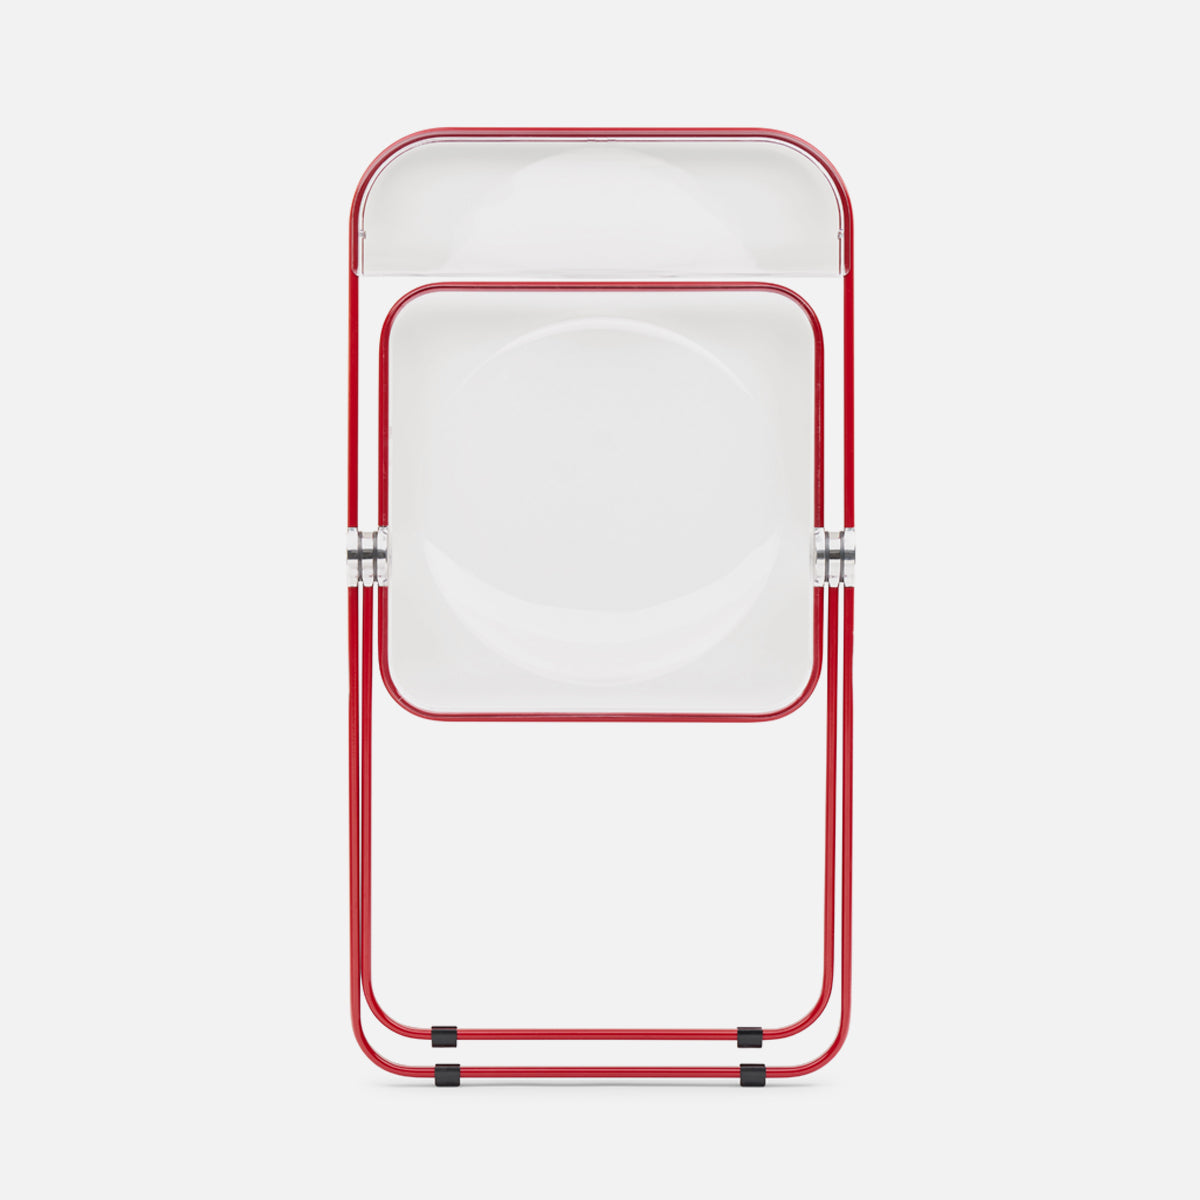 Anonima Castelli Plia Chair Red Clear